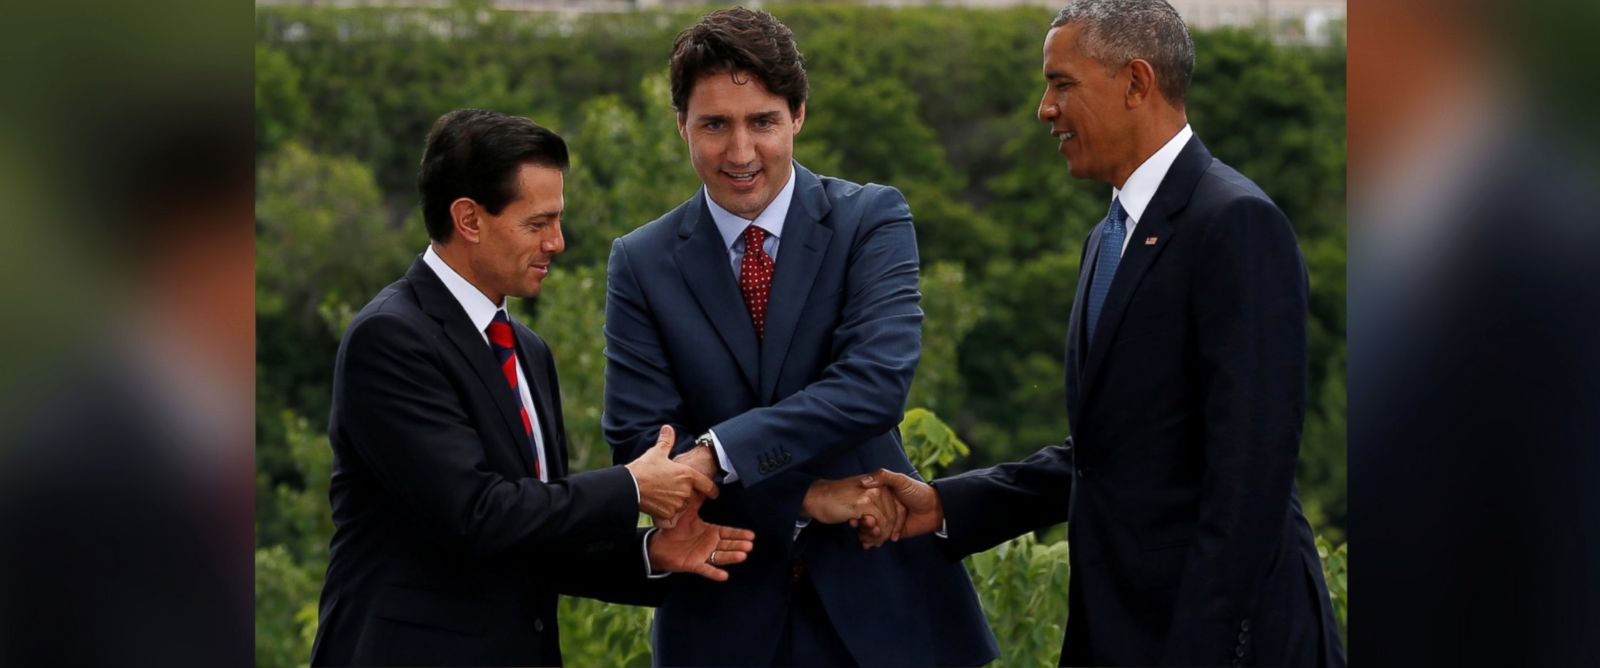 
Cú bắt tay 3 bên ngộ nghĩnh của 3 nhà lãnh đạo khi chụp hình tại hội nghị. Ảnh: Reuters
